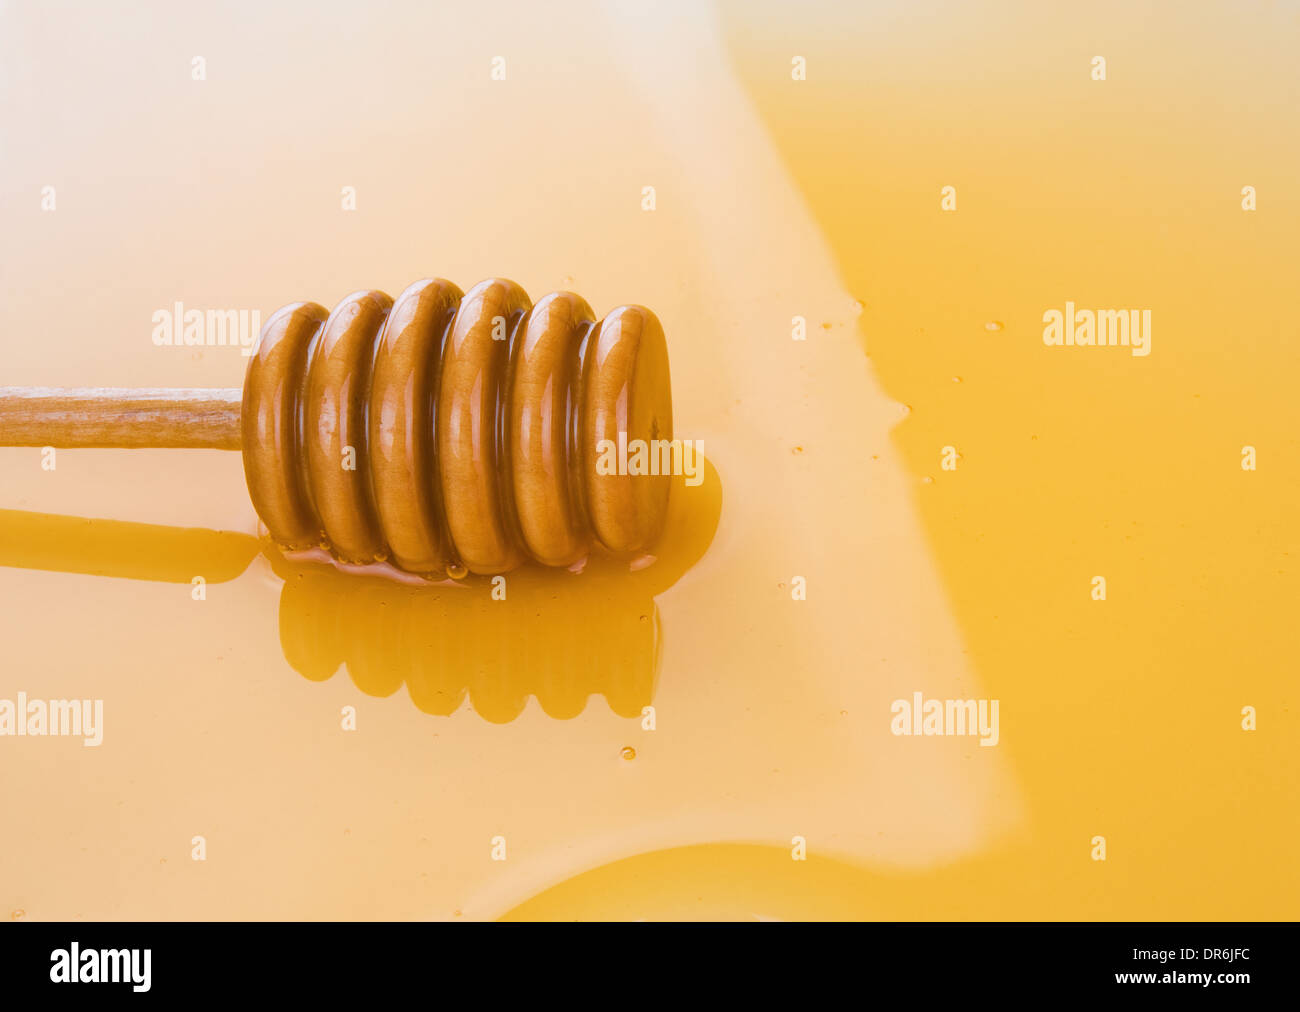 Charco de miel con vara de madera como fondo Foto de stock